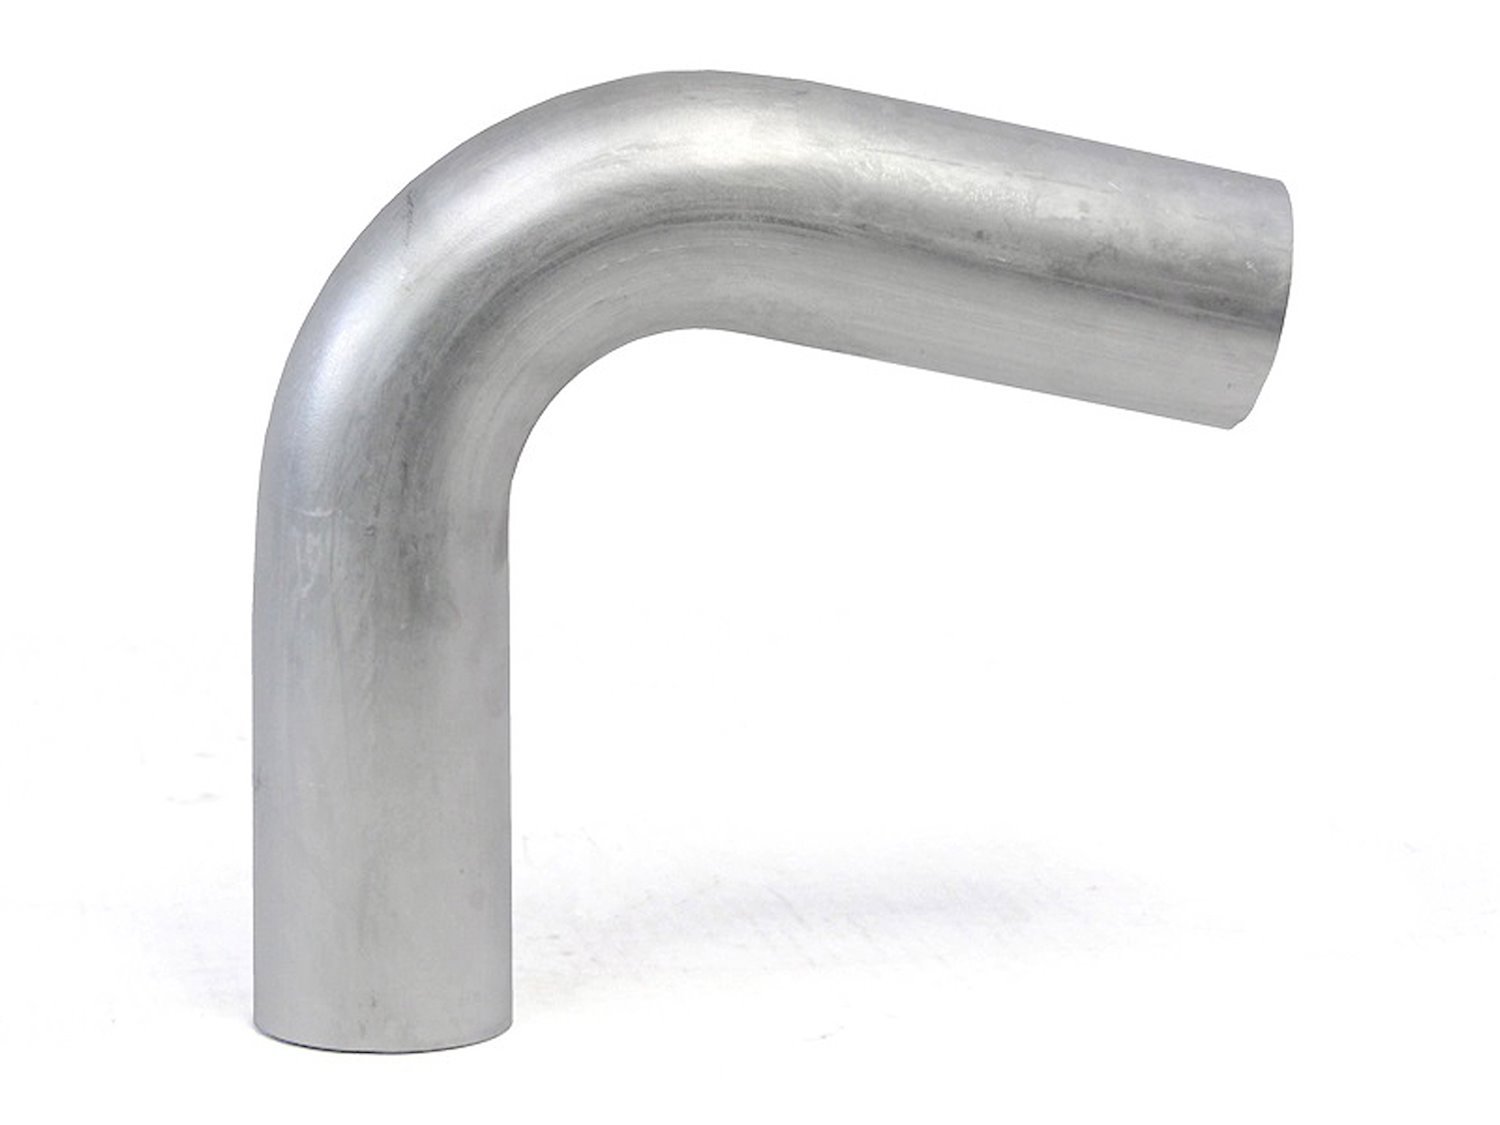 AT100-450-CLR-6 Aluminum Elbow Tube, 6061 Aluminum, 100-Degree Bend Elbow Tubing, 4-1/2 in. OD, Large Radius, 6 in. CLR